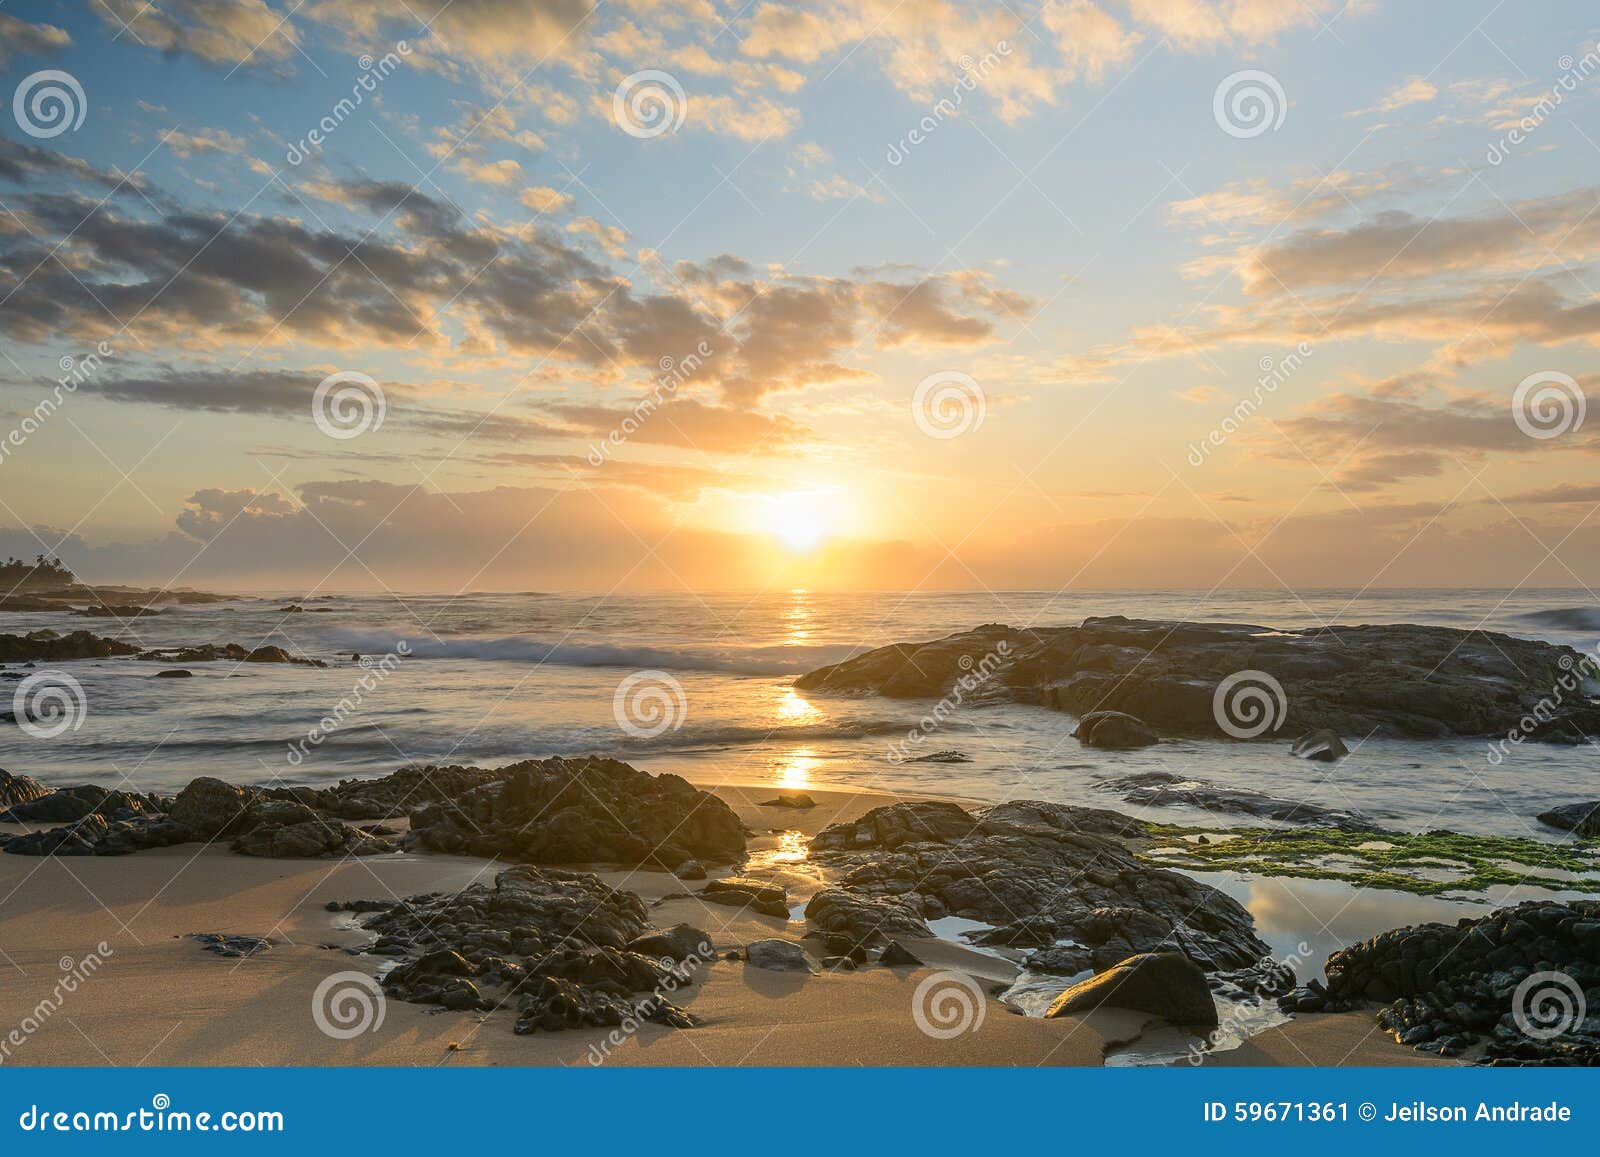 sunrise in itapuÃÂ£ beach - salvador - bahia - brazil